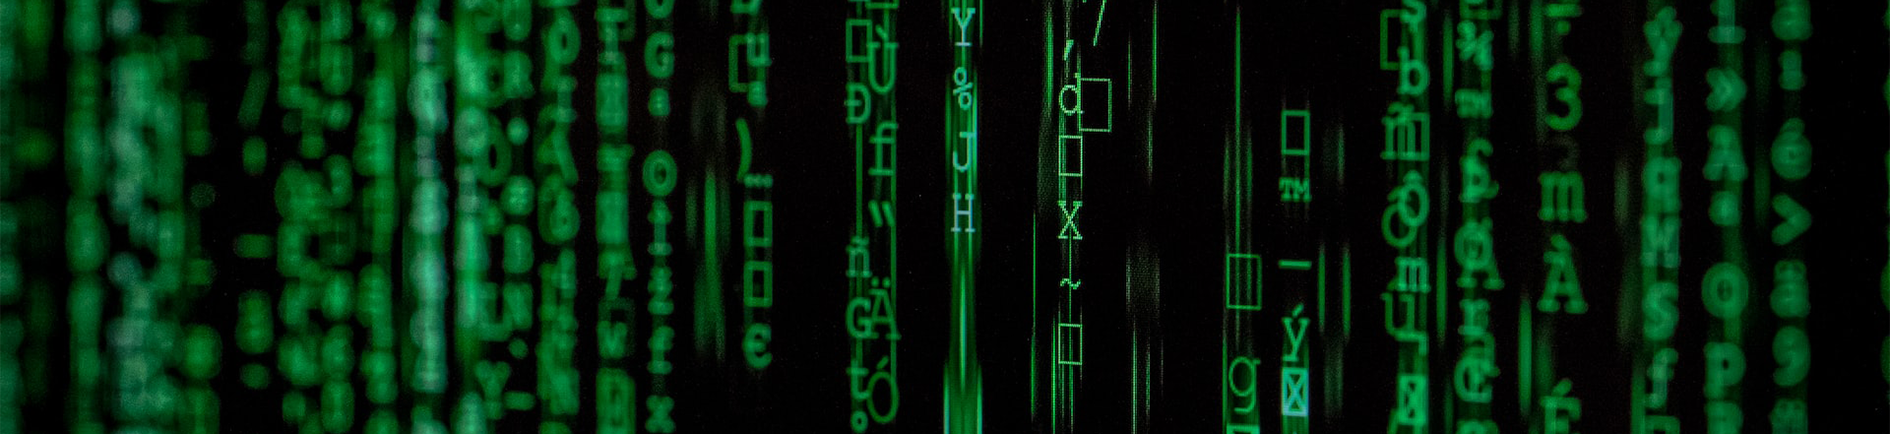 Pluie de symboles verts sur un écran noir à la Matrix.